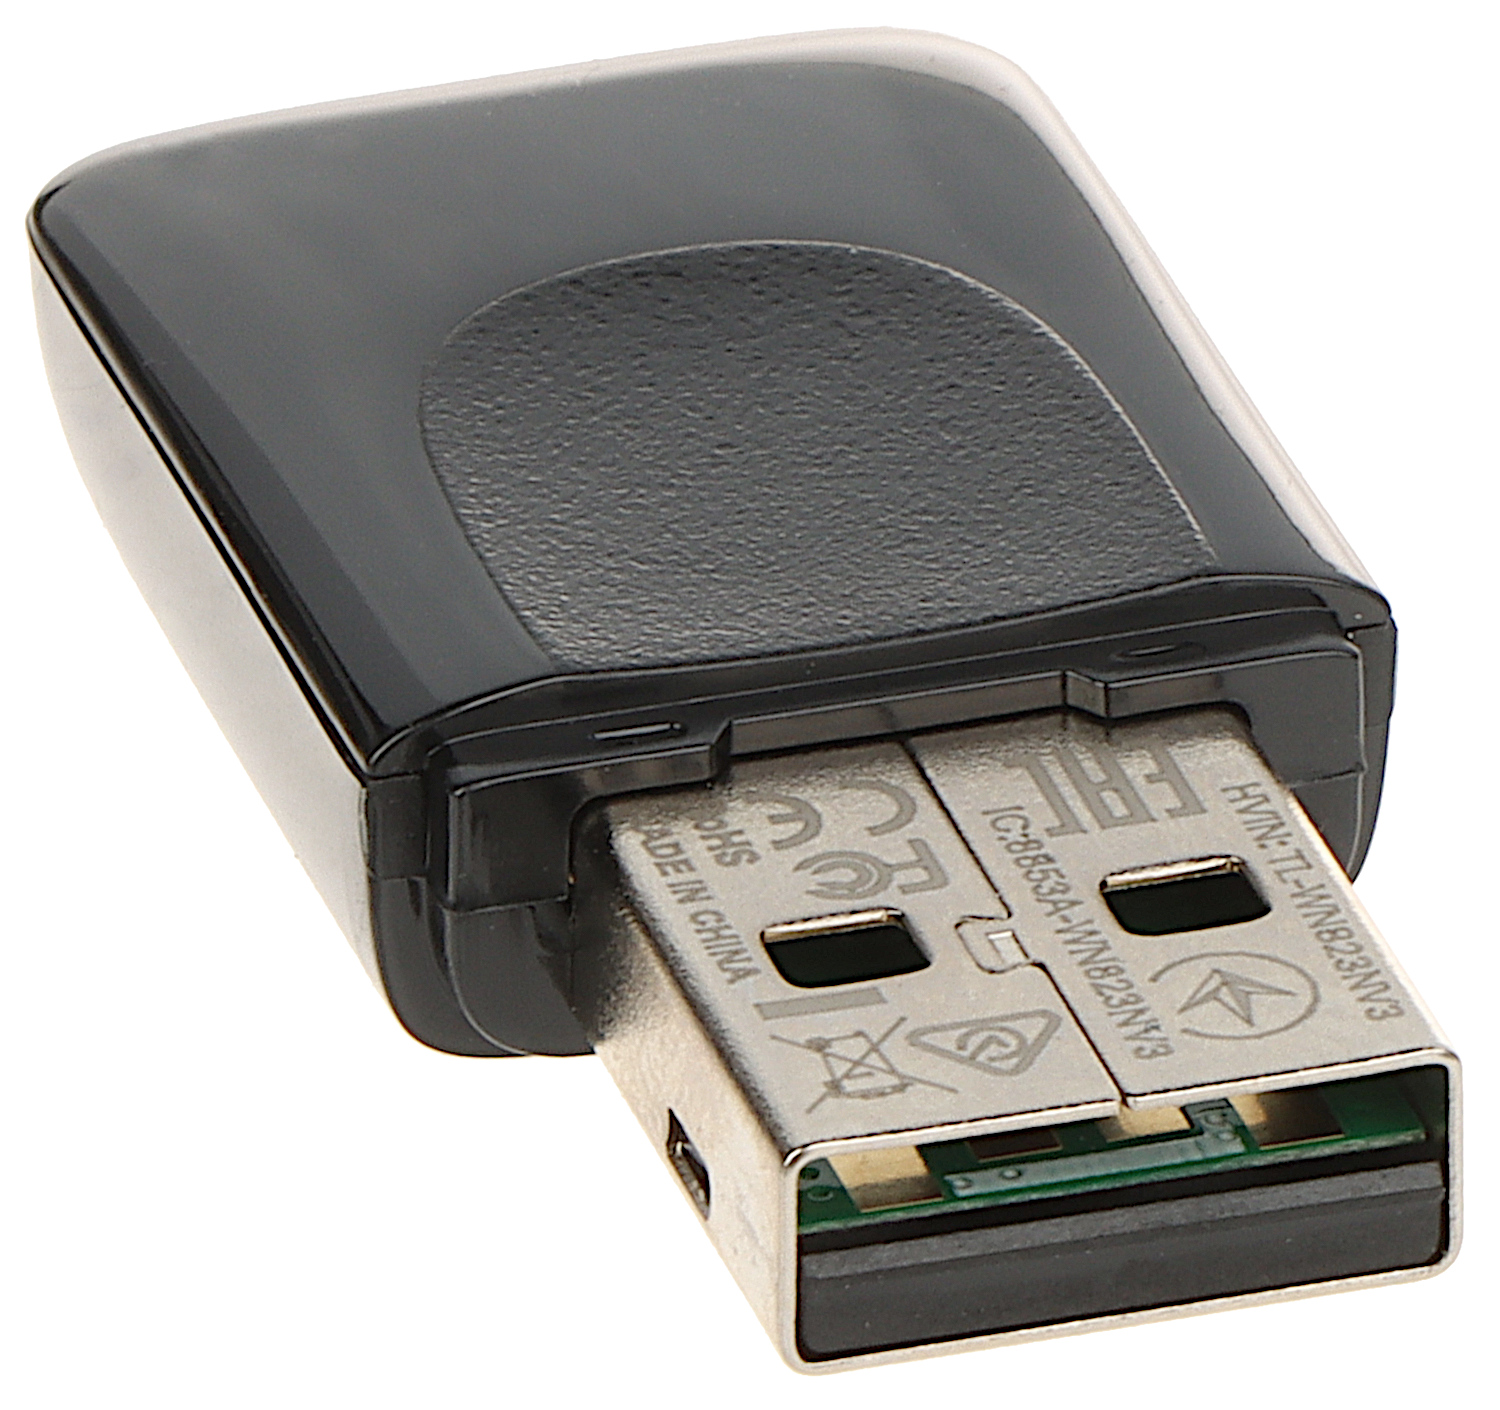 TP-LINK TL WN823N - Clé Wi-Fi Ports USB 2.0 300 Mbps